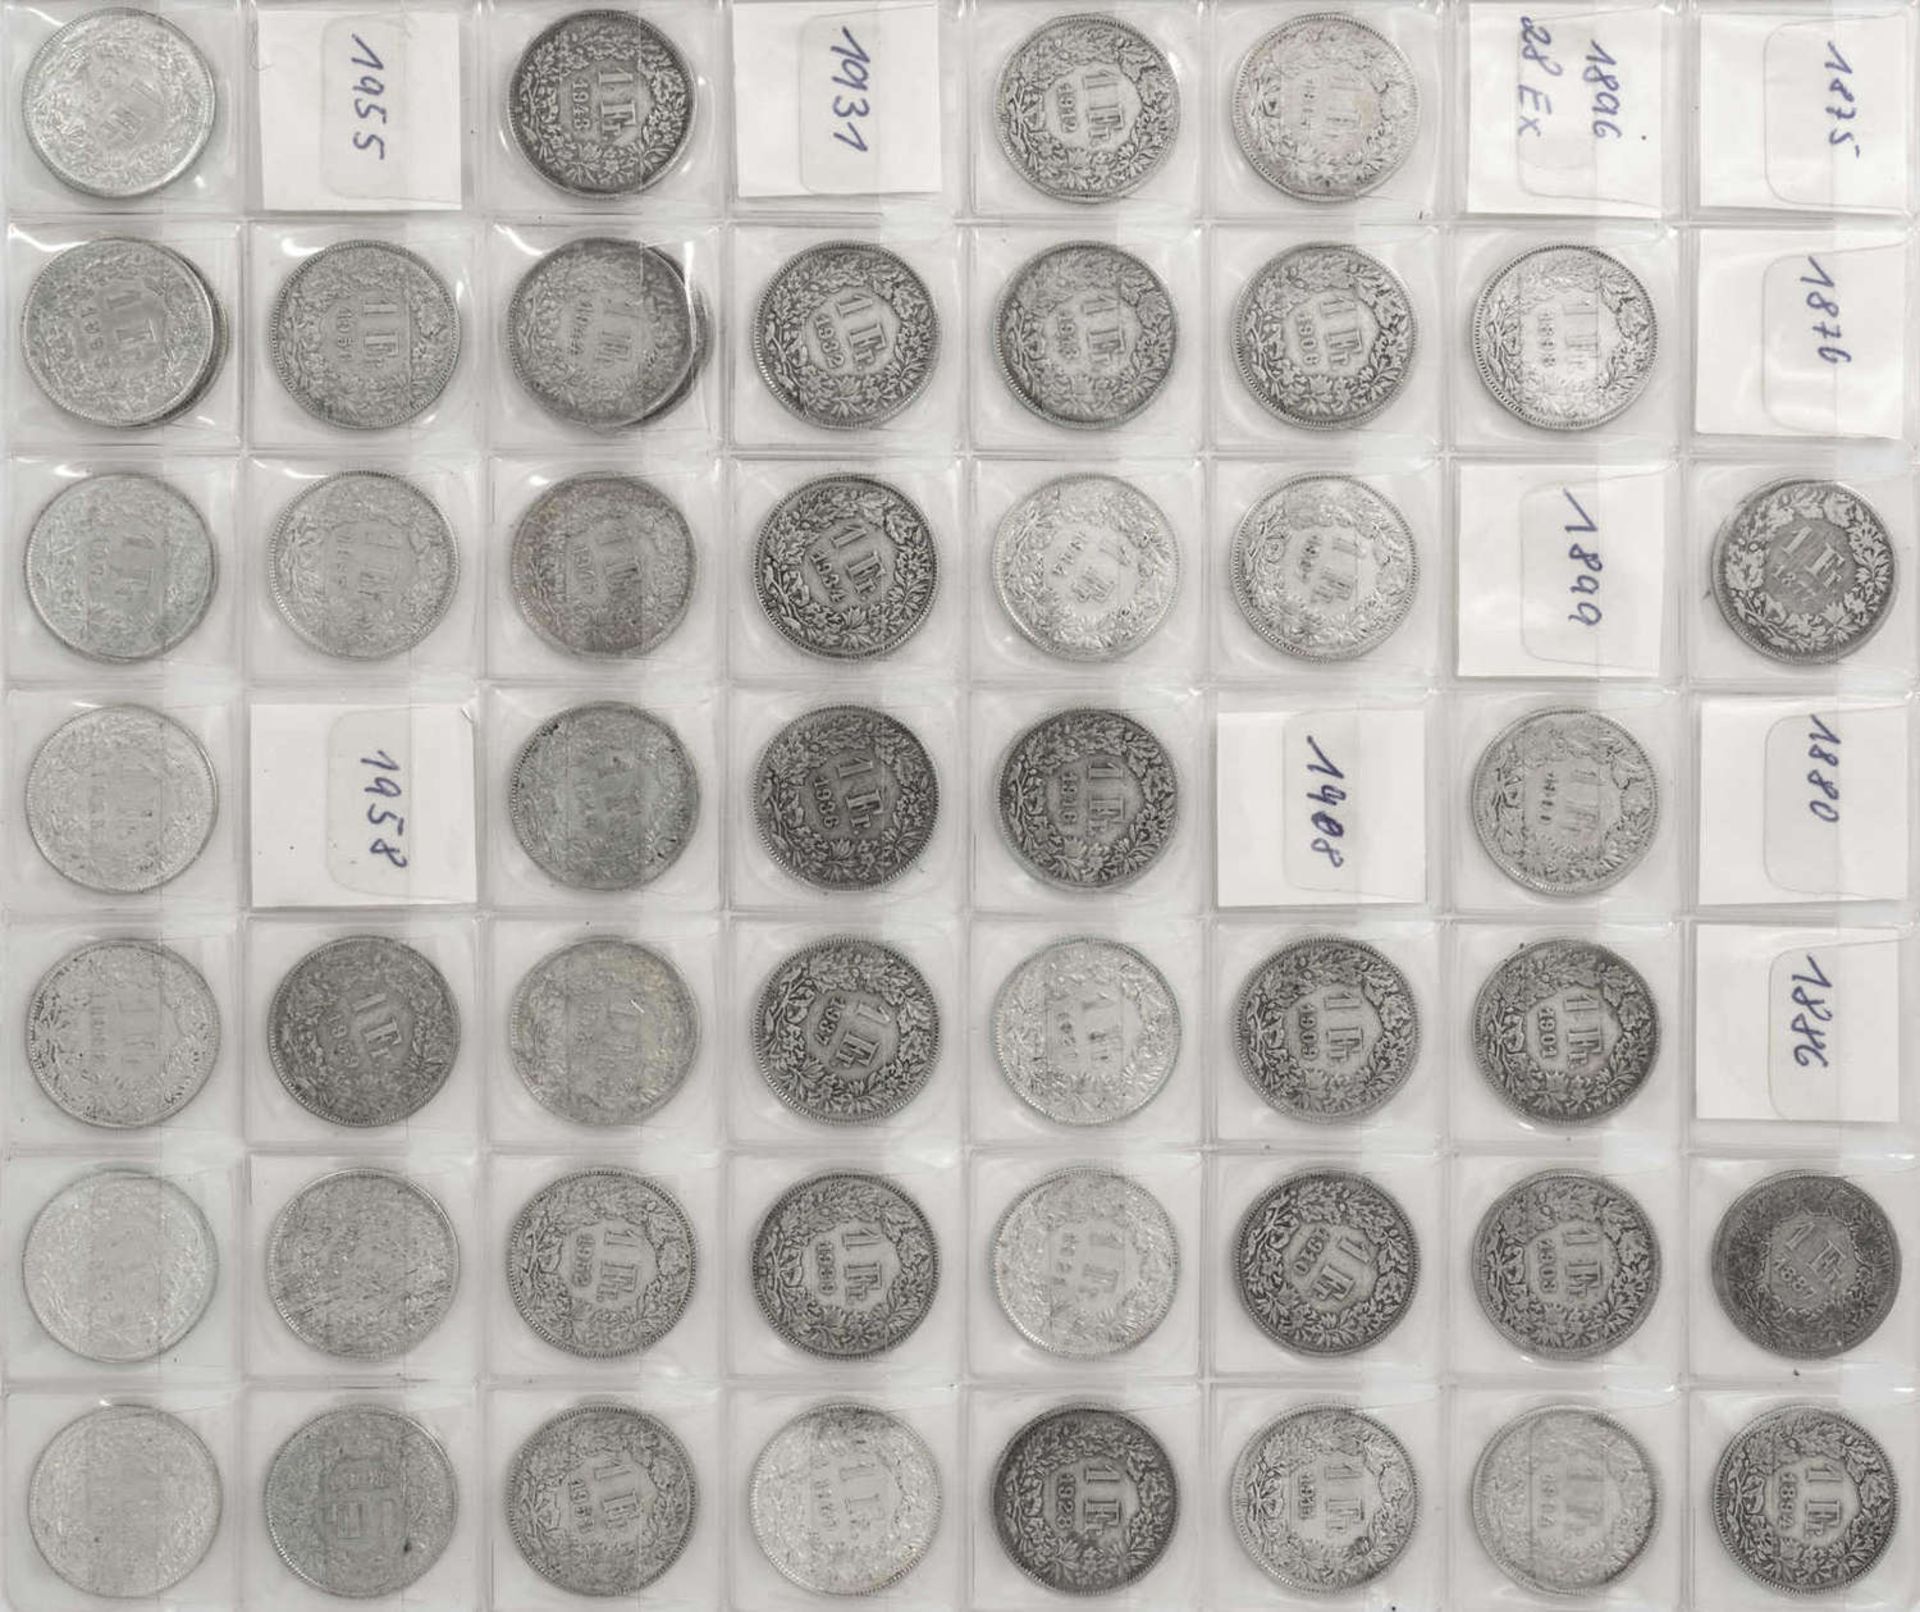 Schweiz 1877/1967, Sammlung 1 Franken - Münzen von 1877 bis 1967. Insgesamt 48 Stück. Erhaltung: